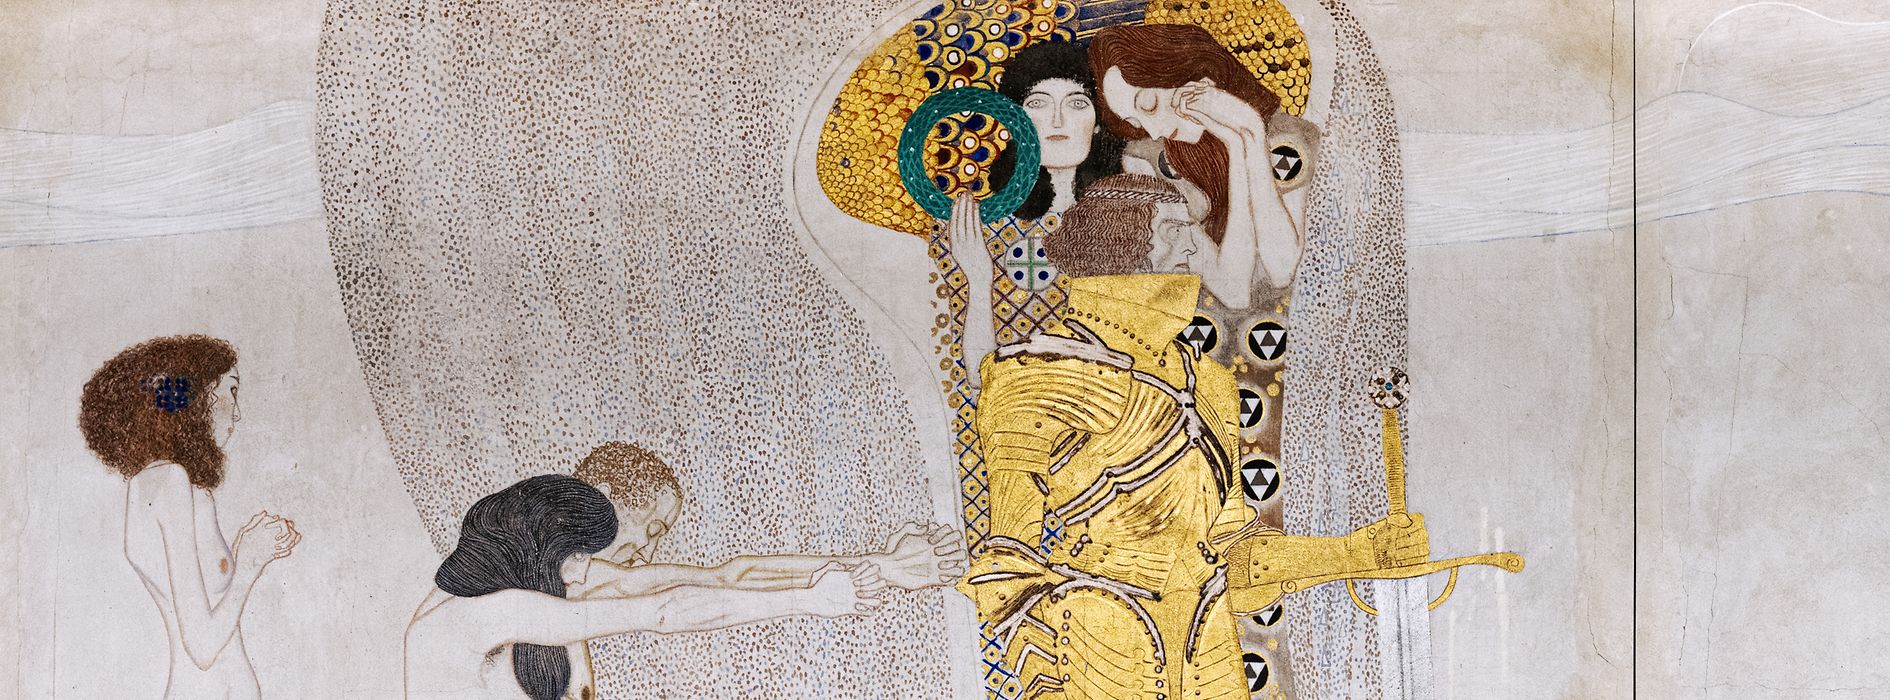 Cuadro de Gustav Klimt: Bethovenfries